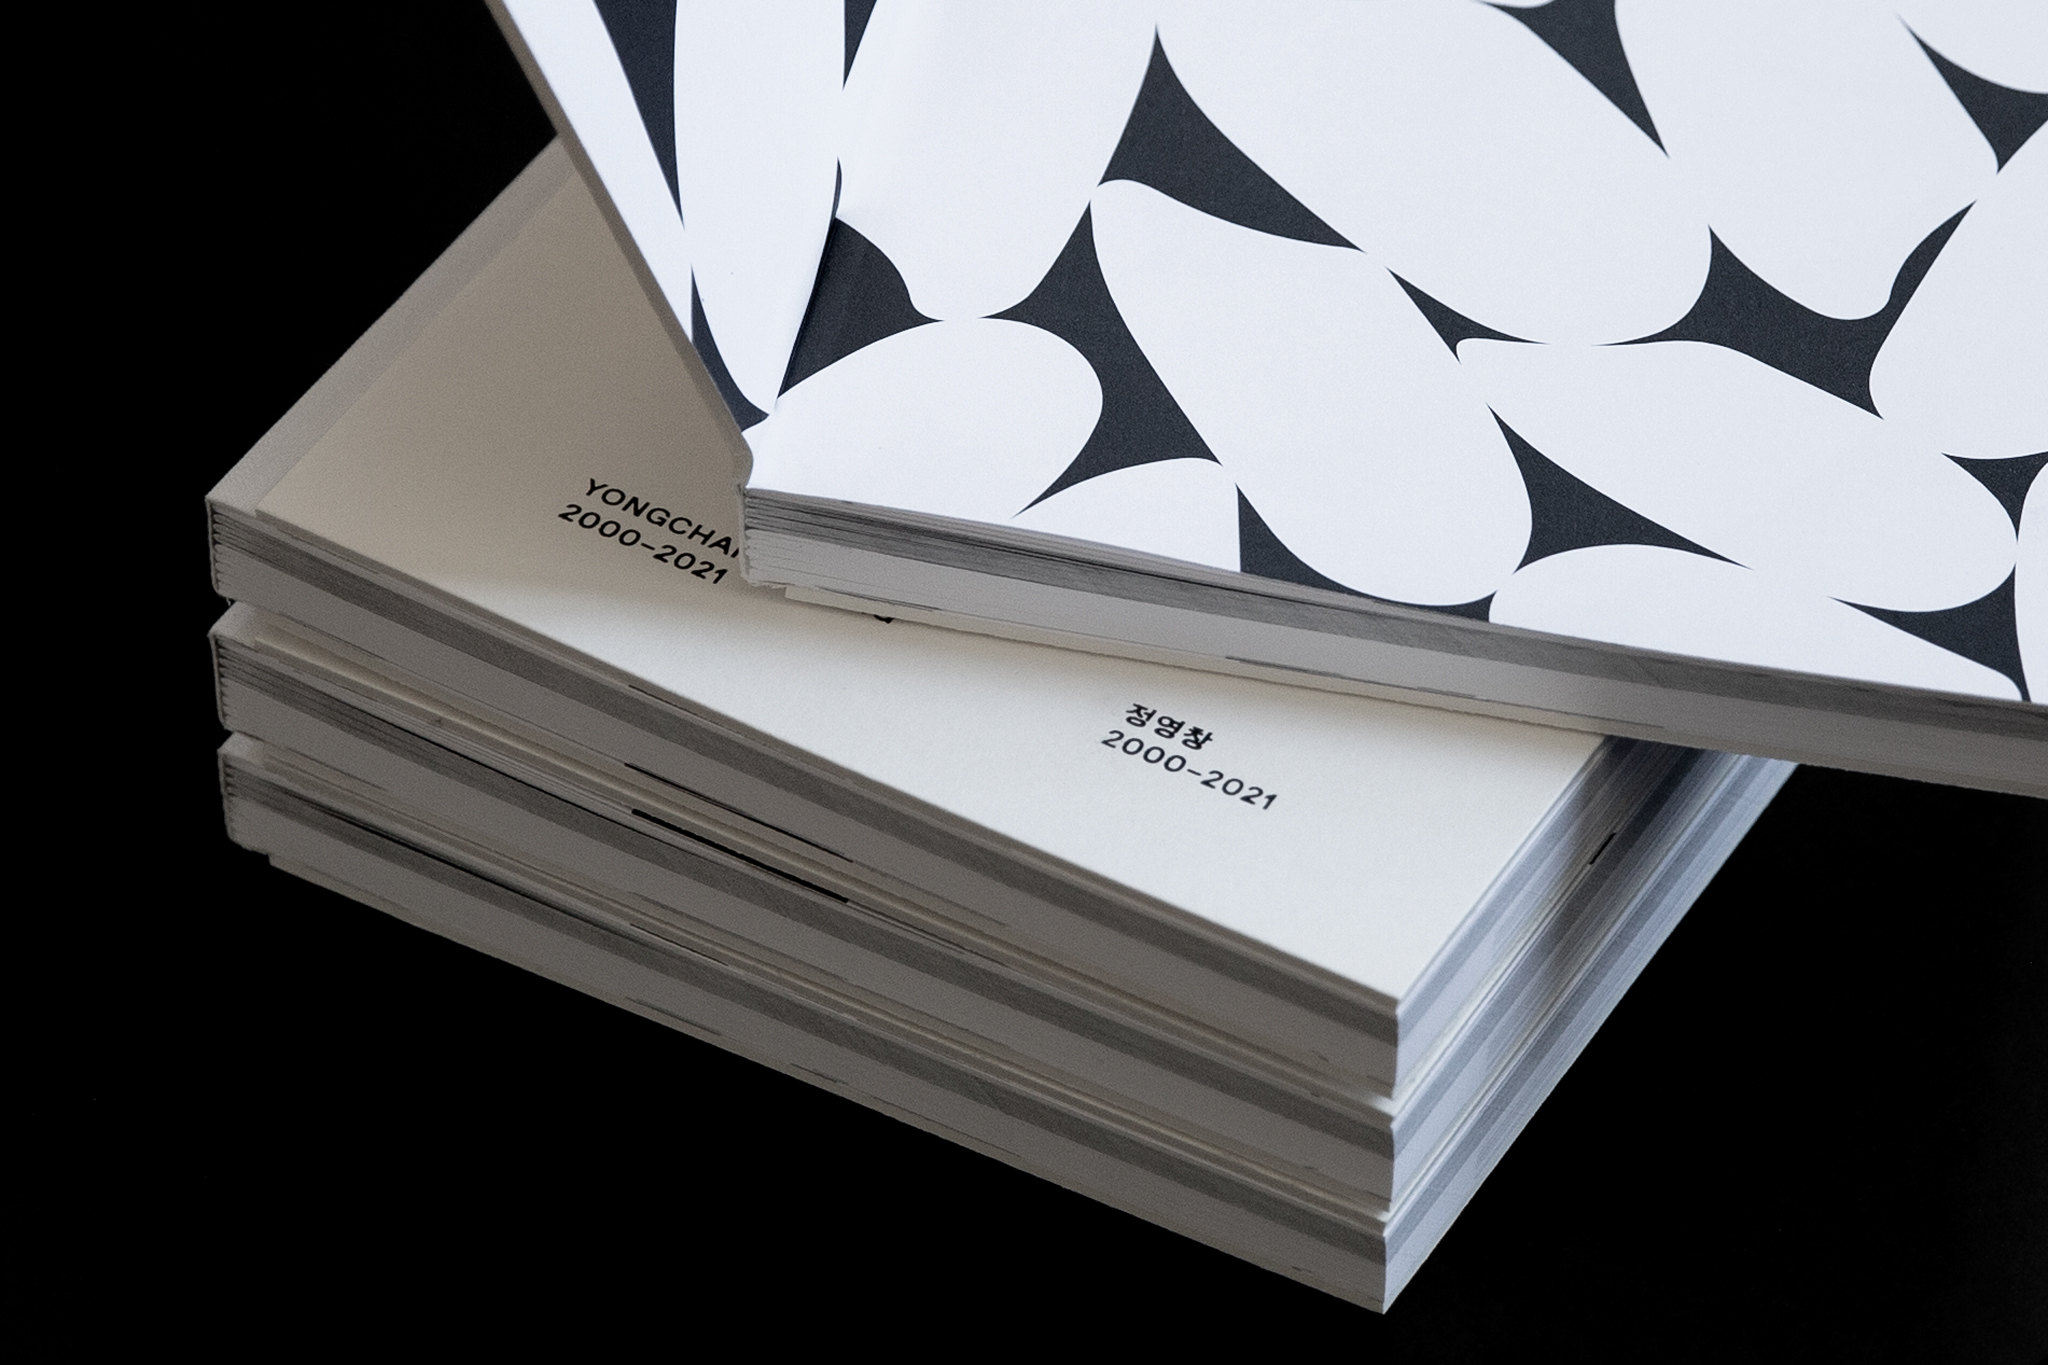 Katalogstapel und Vorsatzpapier mit Reiskörnern / Catalog stack and endpapers with rice grains